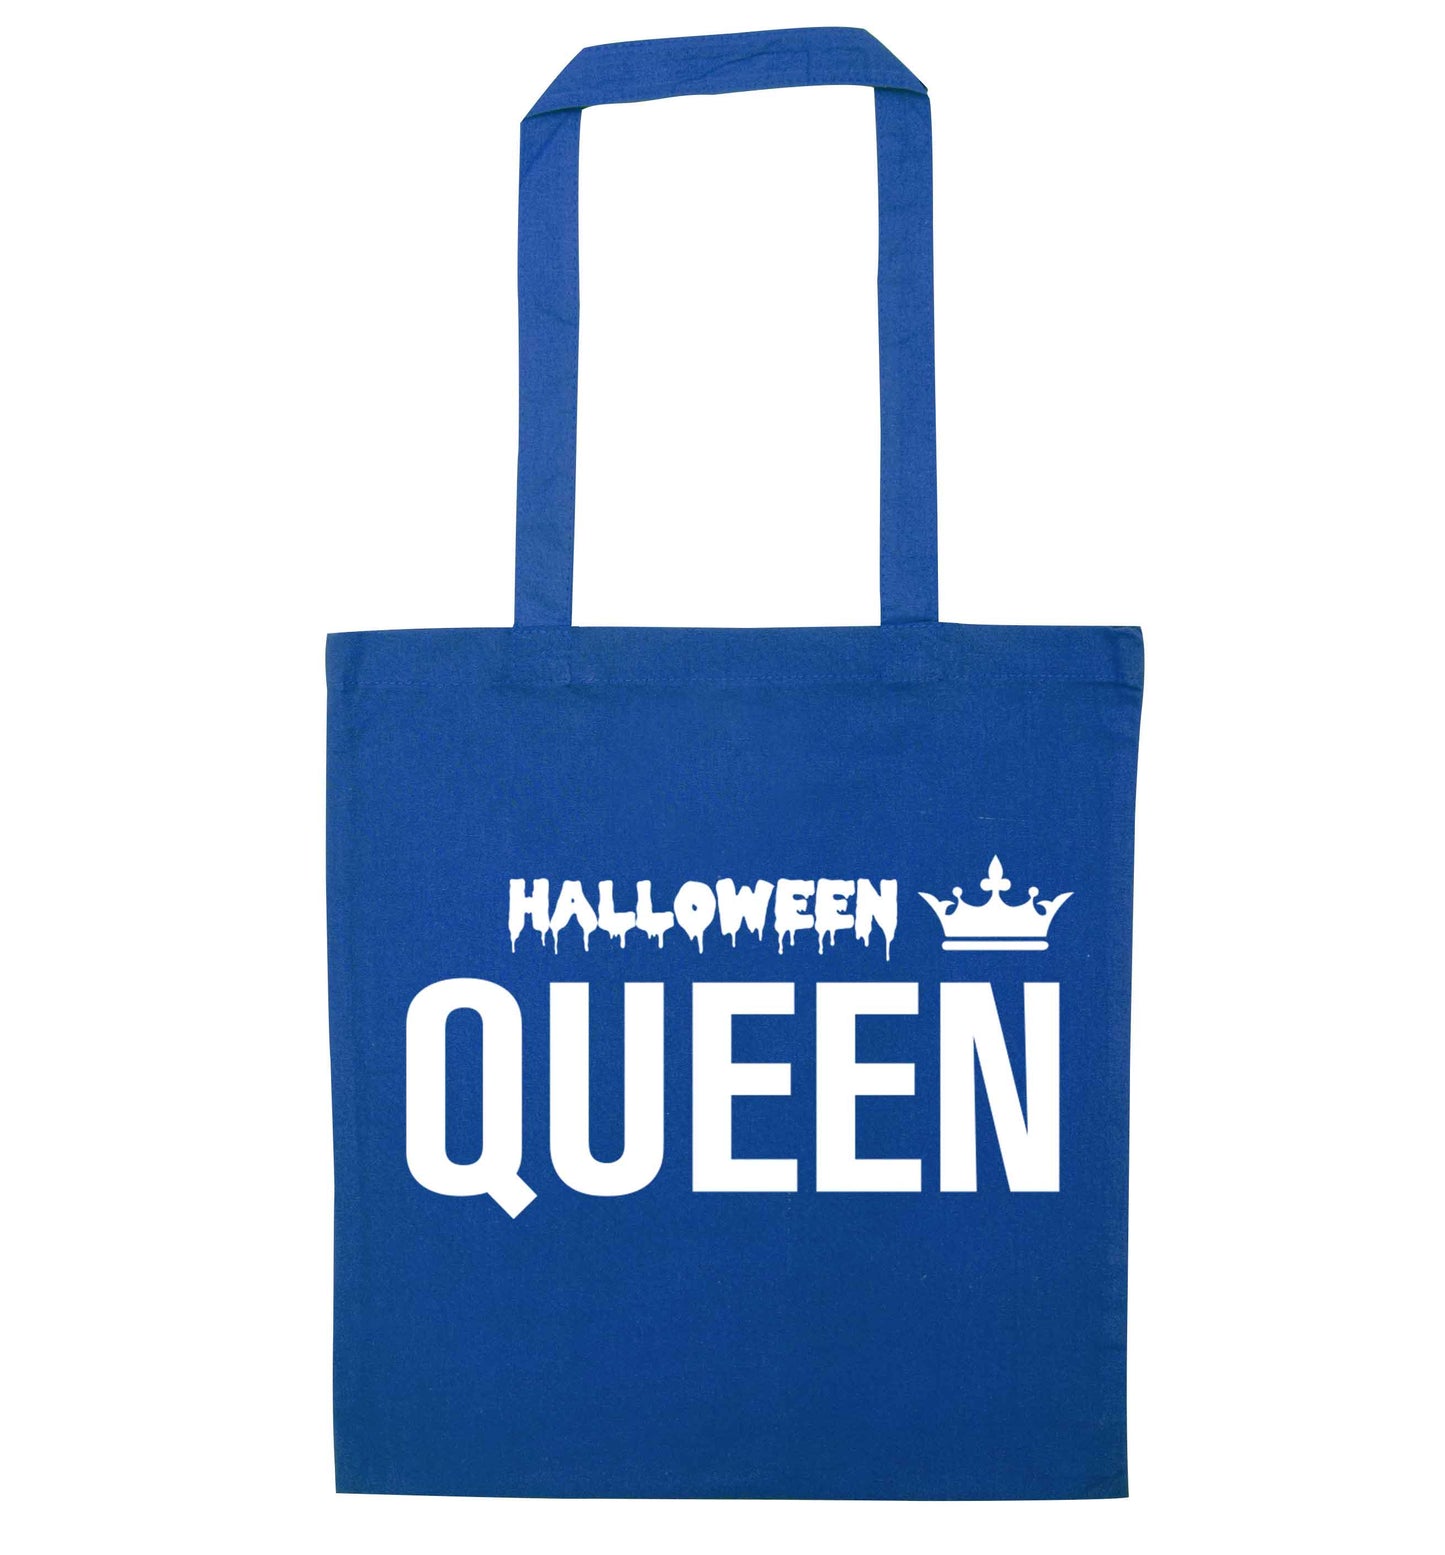 Halloween queen blue tote bag